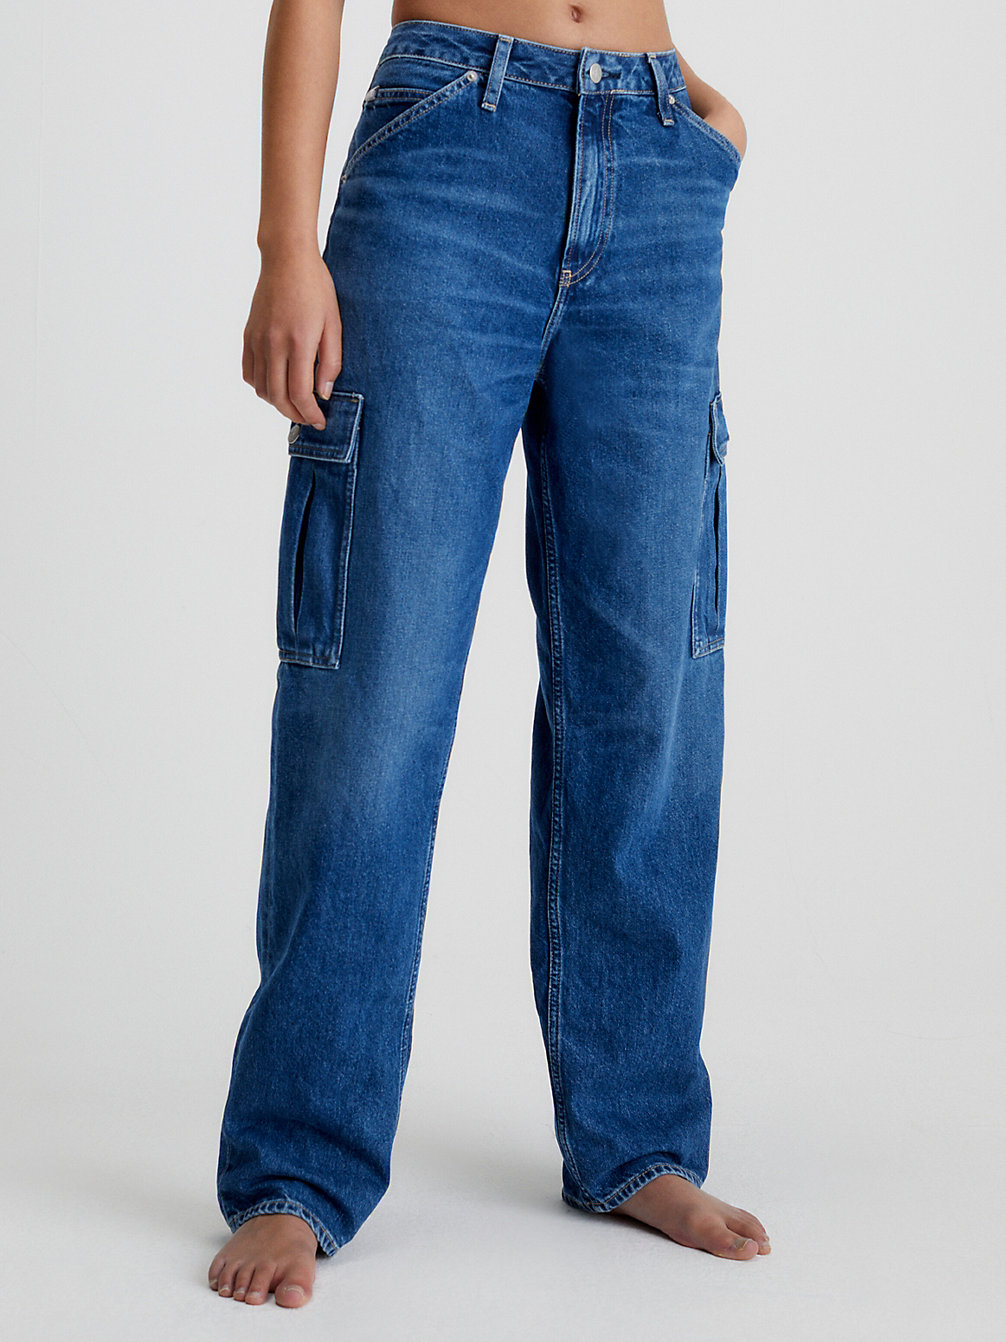 Jeans Rectos Cargo Estilo Años 90 > DENIM MEDIUM > undefined mujeres > Calvin Klein